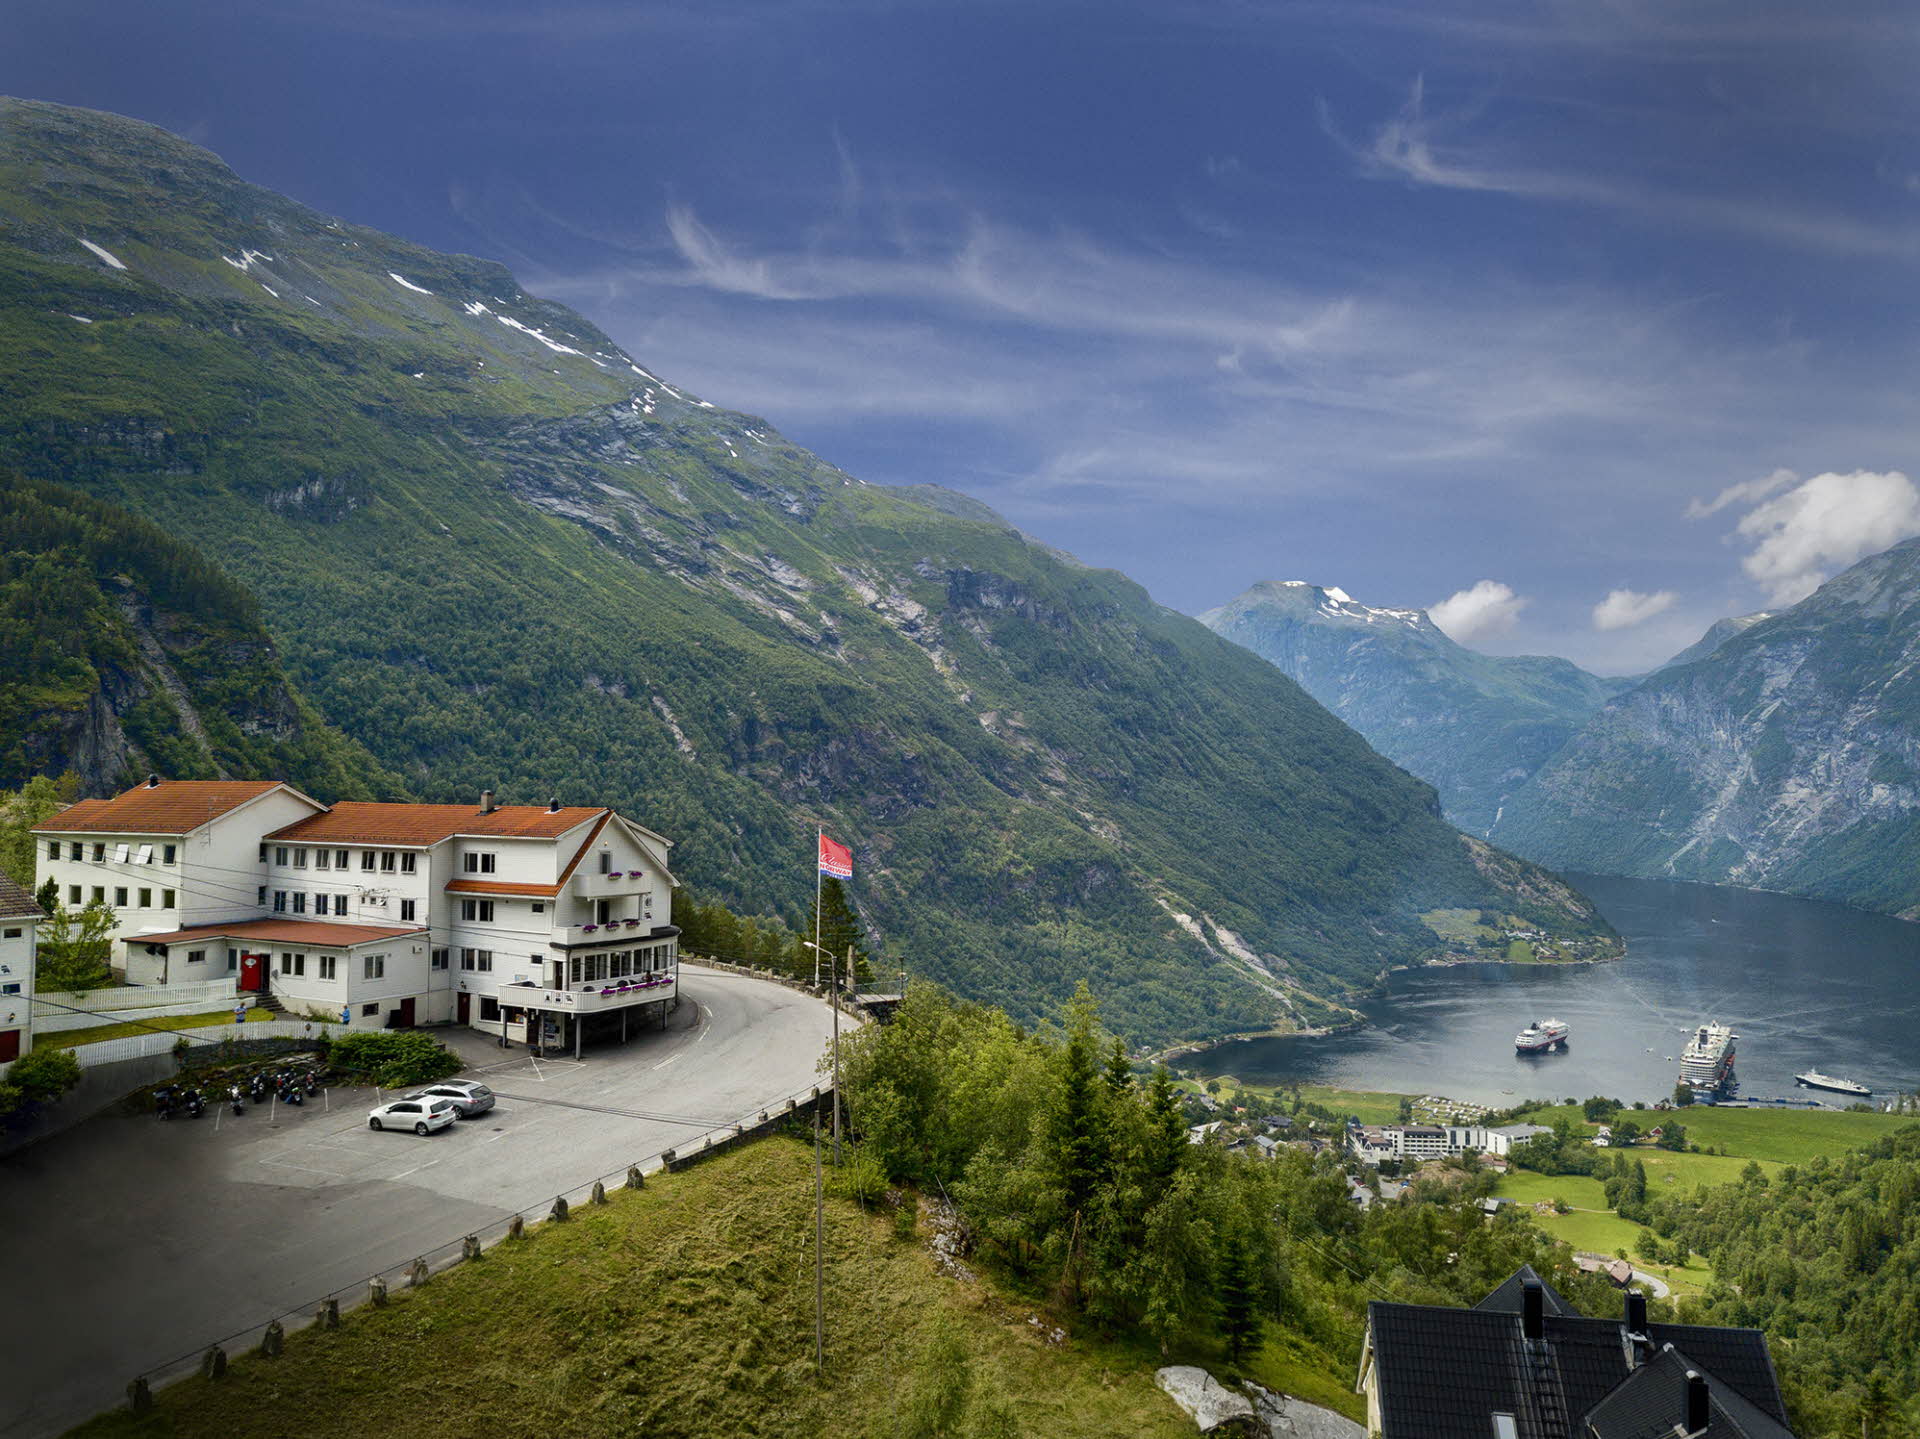 Blick auf das Hotel Utsikten oberhalb von Geiranger und den Fjord. Ringsum Berge, blauer Himmel und grüner Wald.